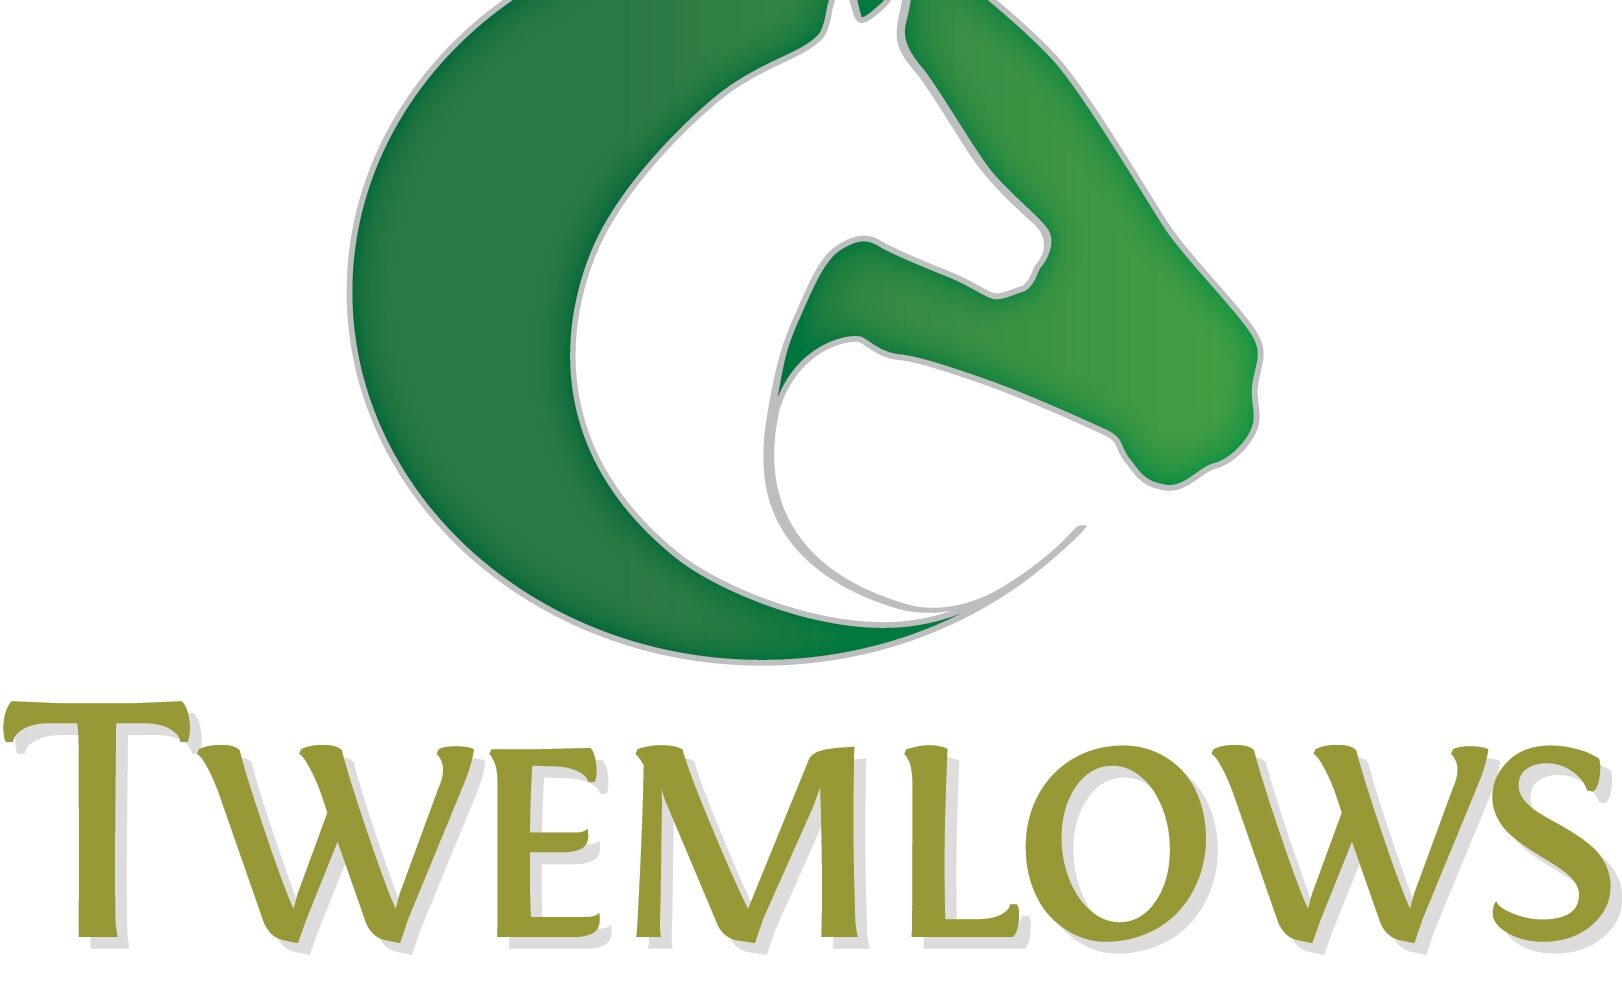 Twemlows Logo